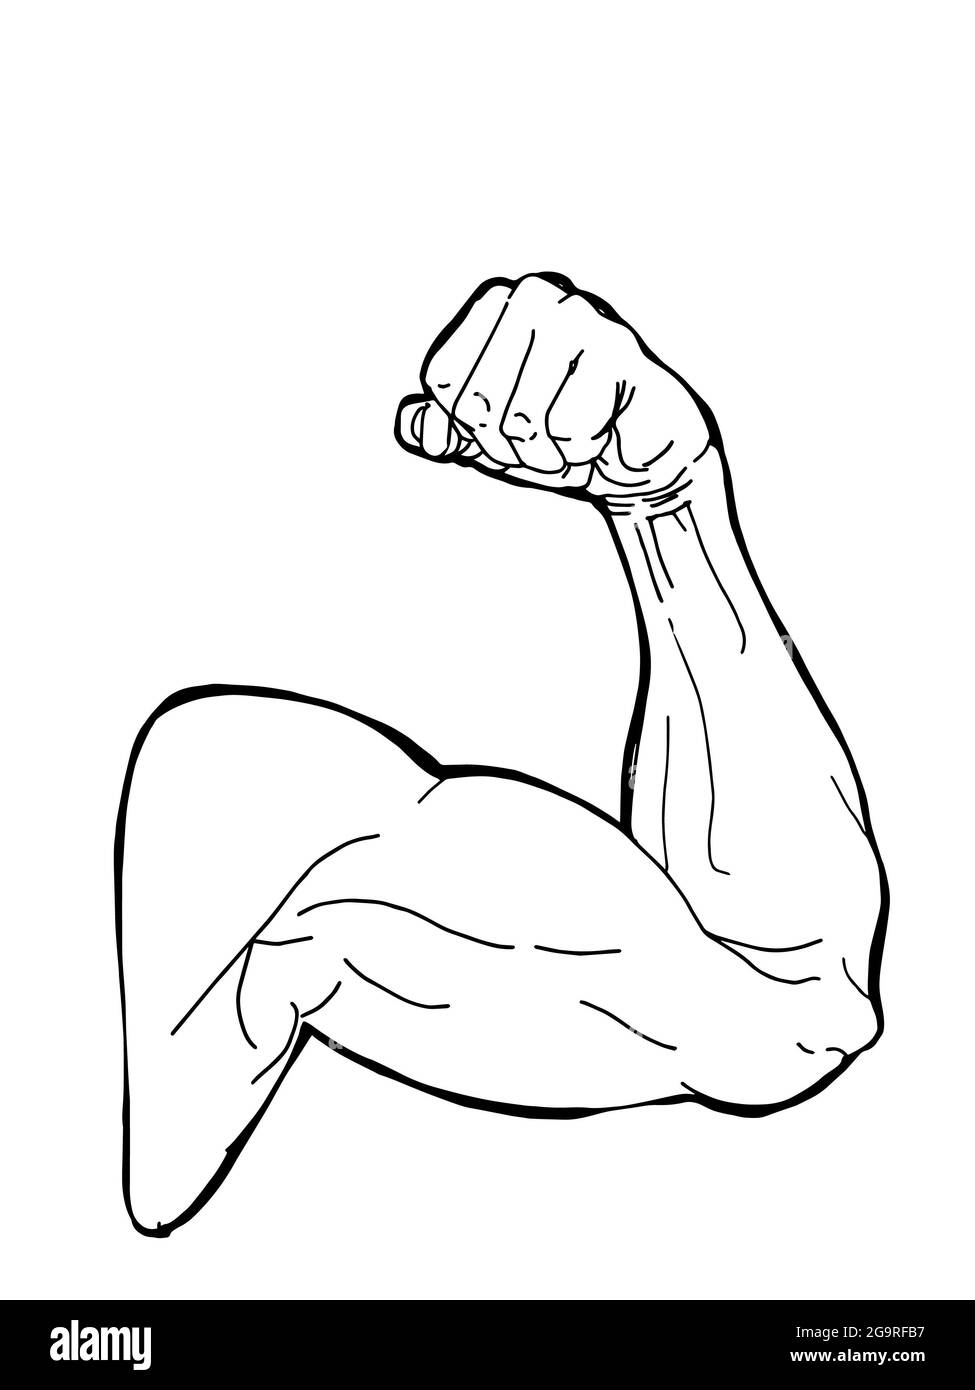 Hombre deportivo, brazo fuerte muscular, ilustración, arte lineal Foto de stock